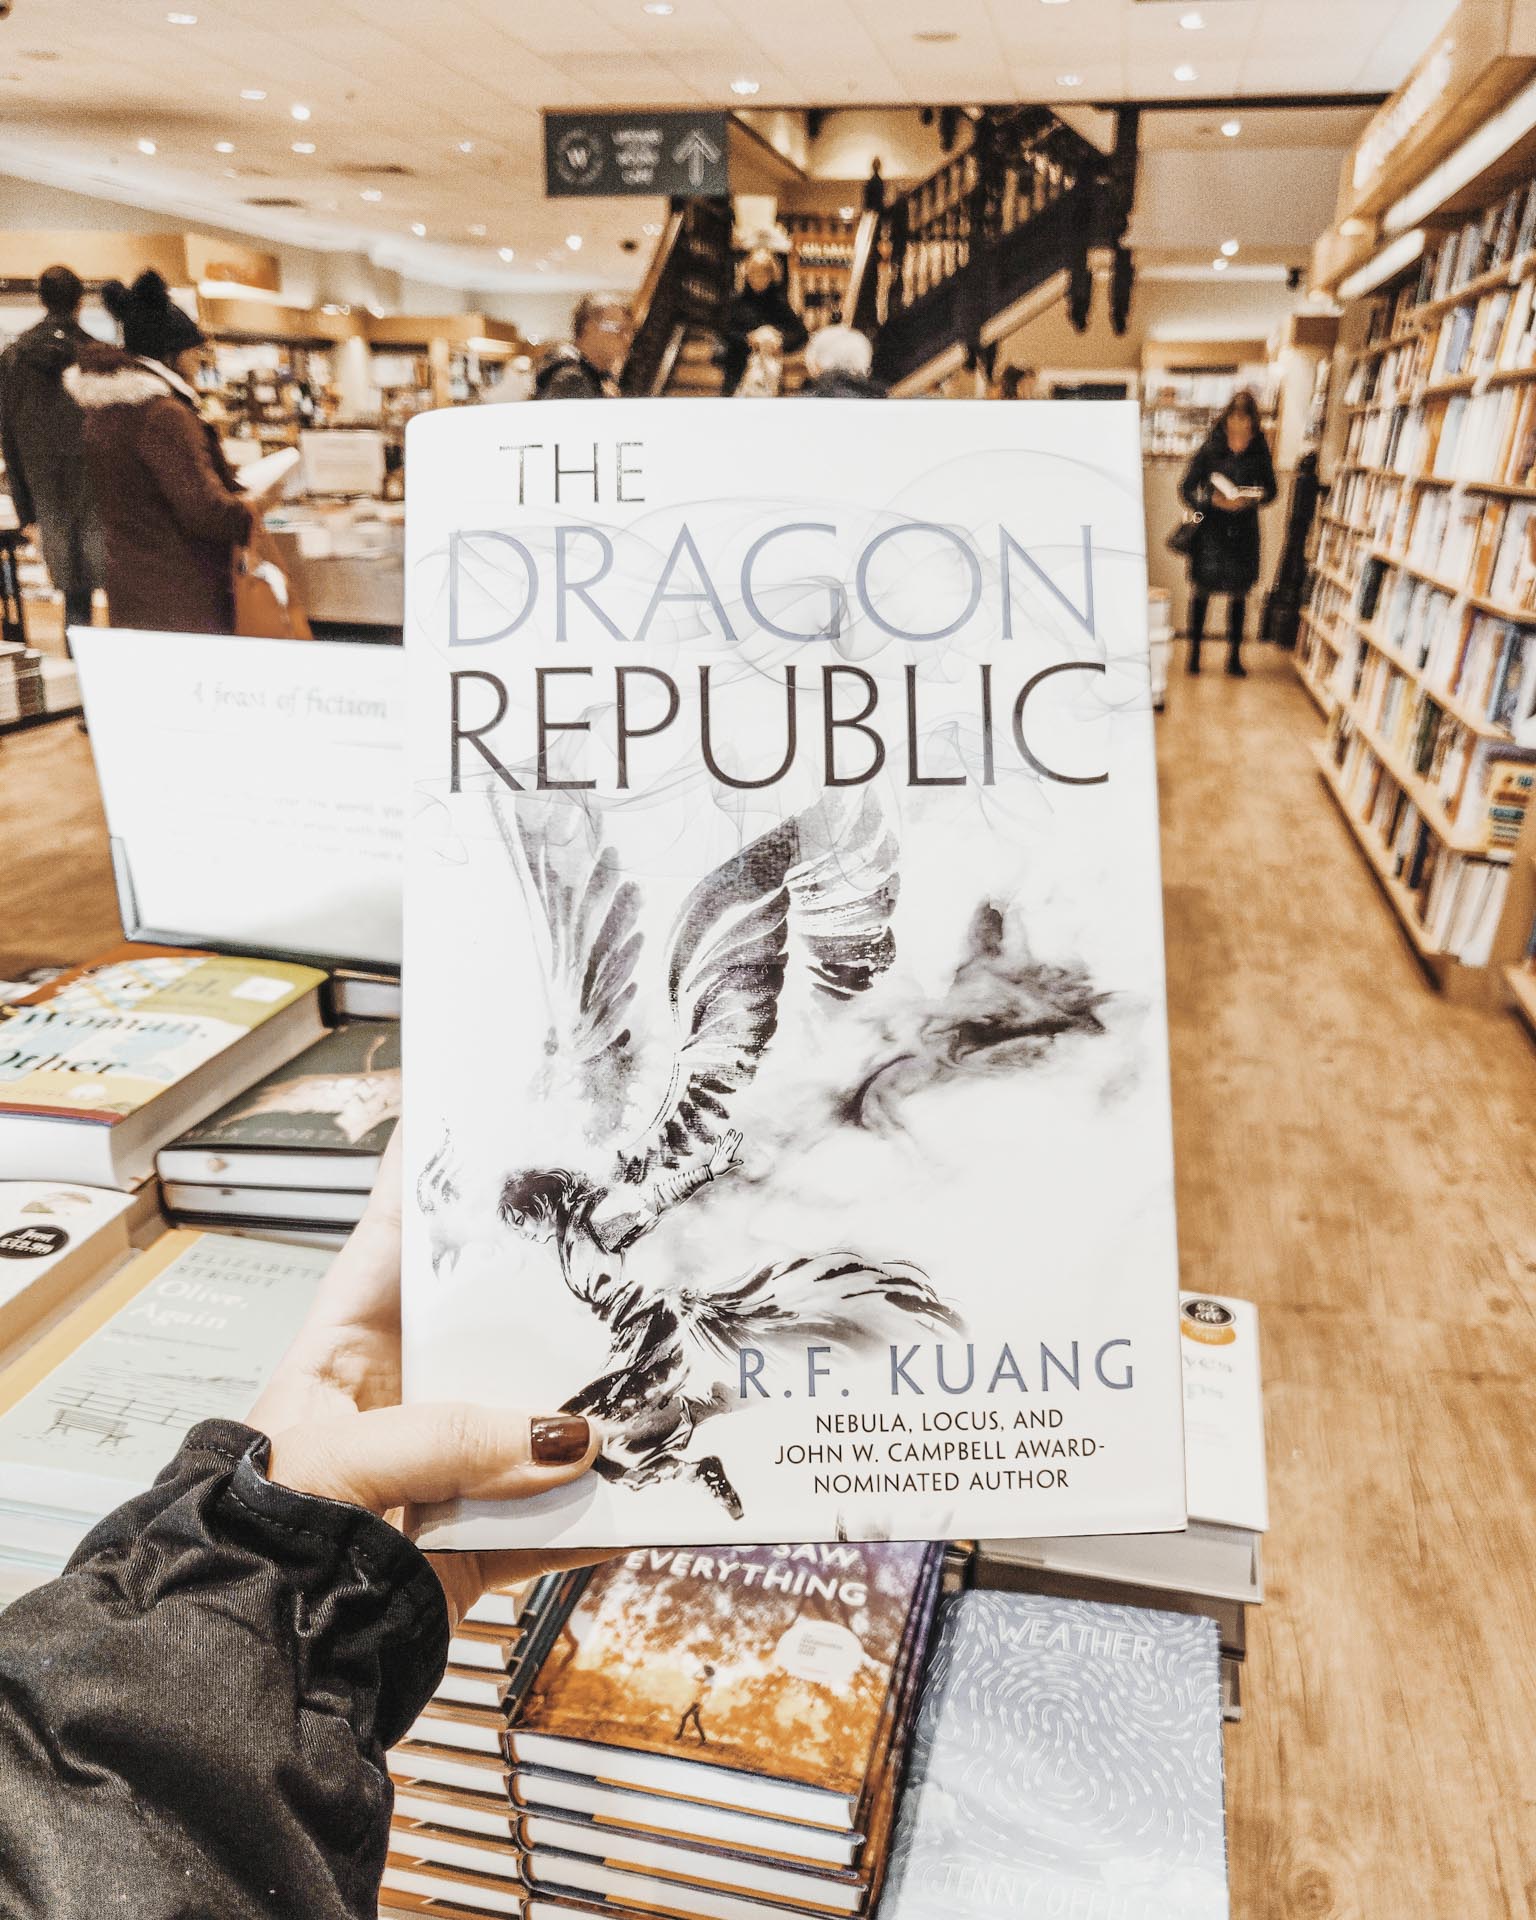 The Dragon Republic photo